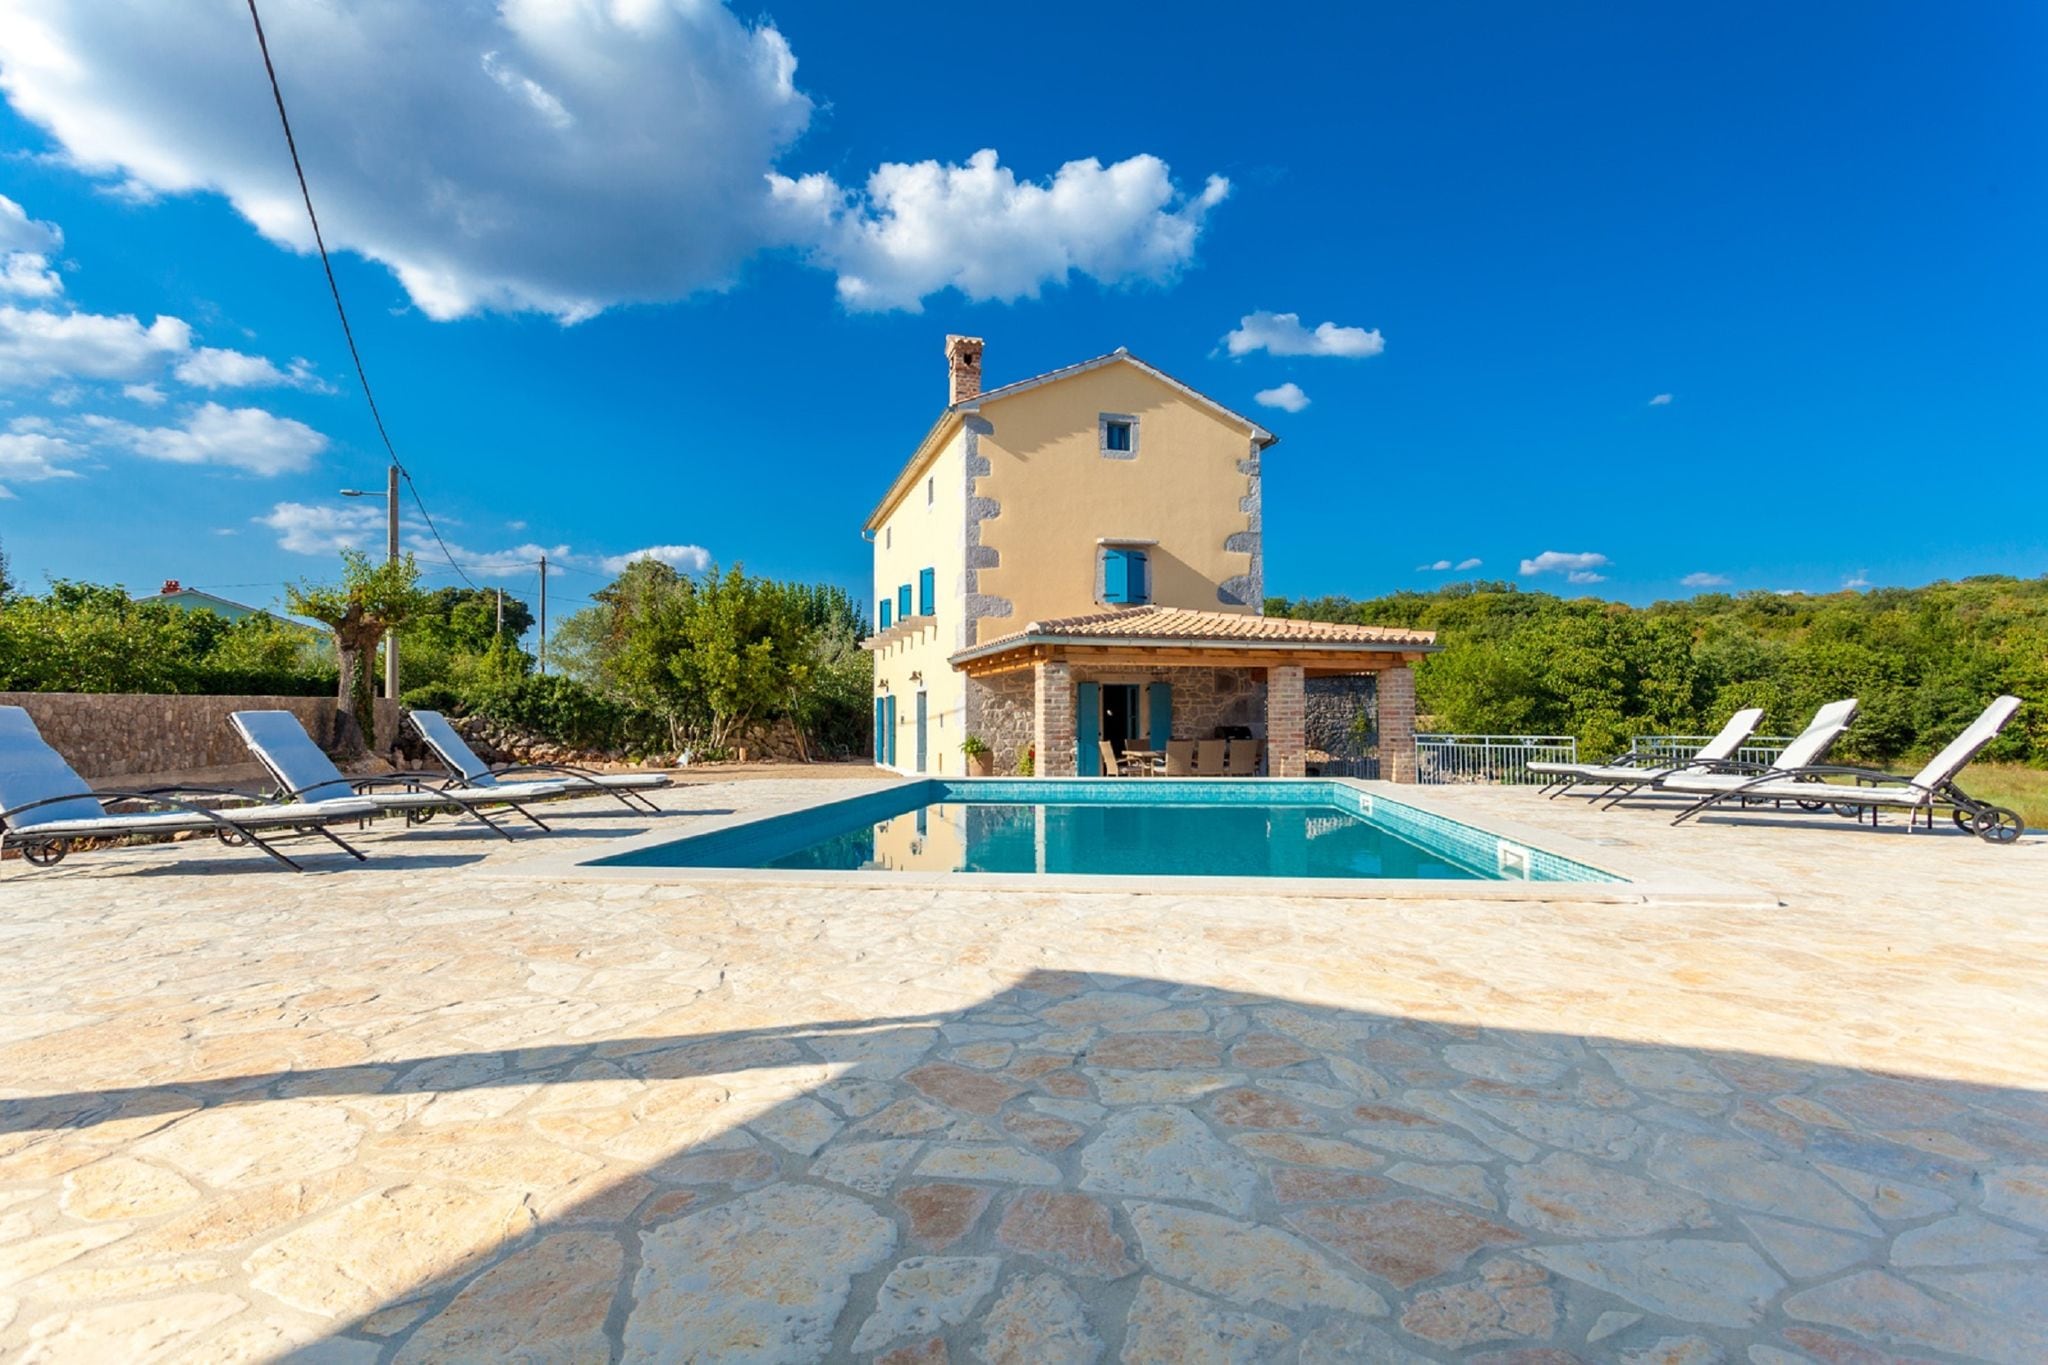 Schitterende villa met privézwembad en overdekt terras!